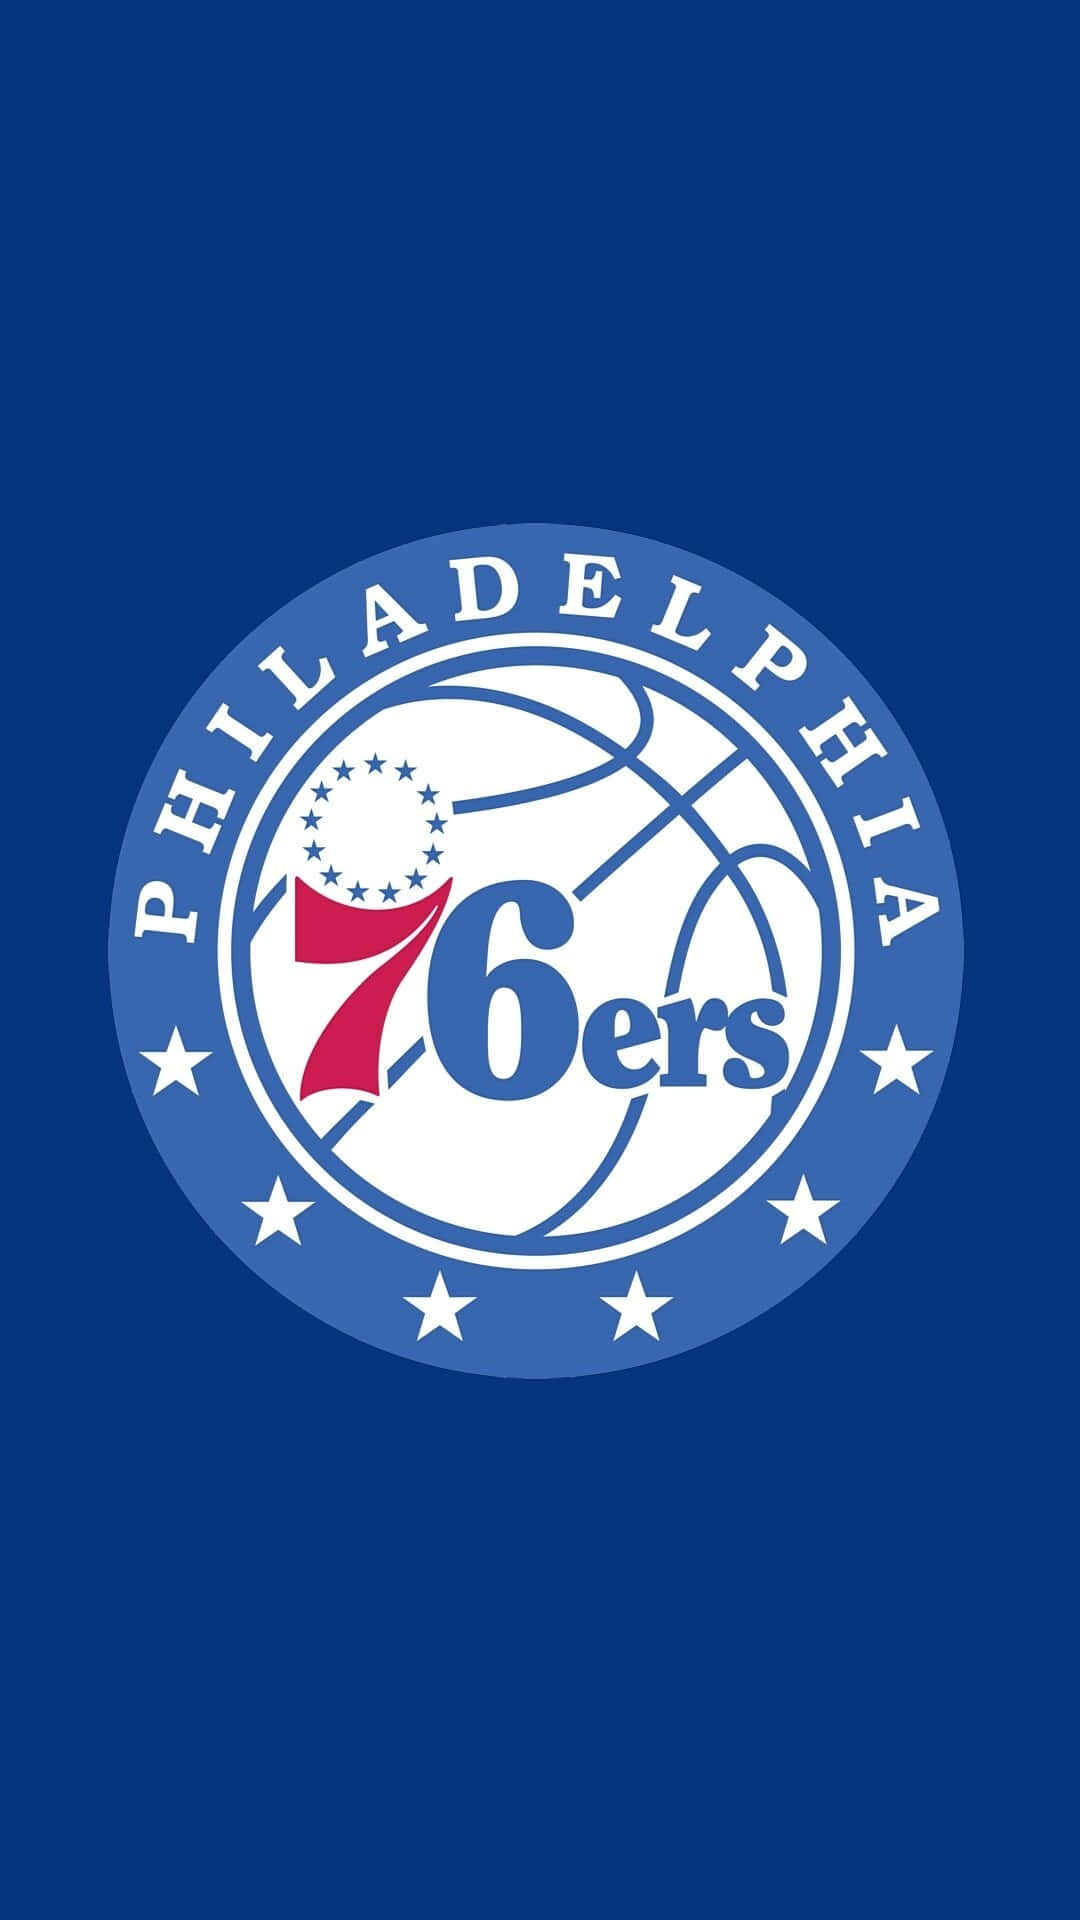 Vis din Philadelphia 76ers stolthed med dette iPhone baggrundsbillede Wallpaper